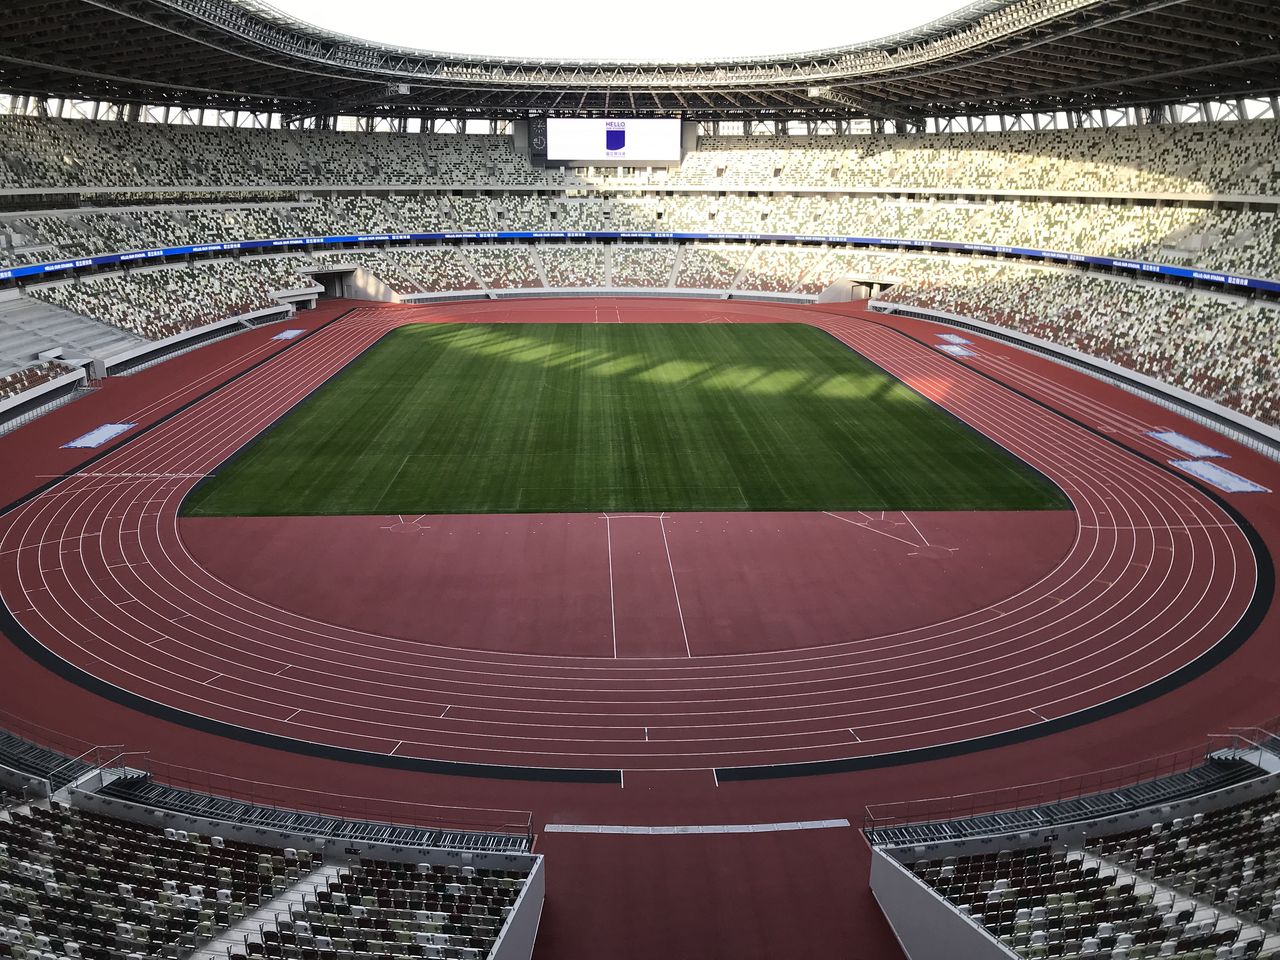 الإستاد الوطني الجديد على أهبة الاستعداد لأولمبياد 2021. (أمانو هيساكي).